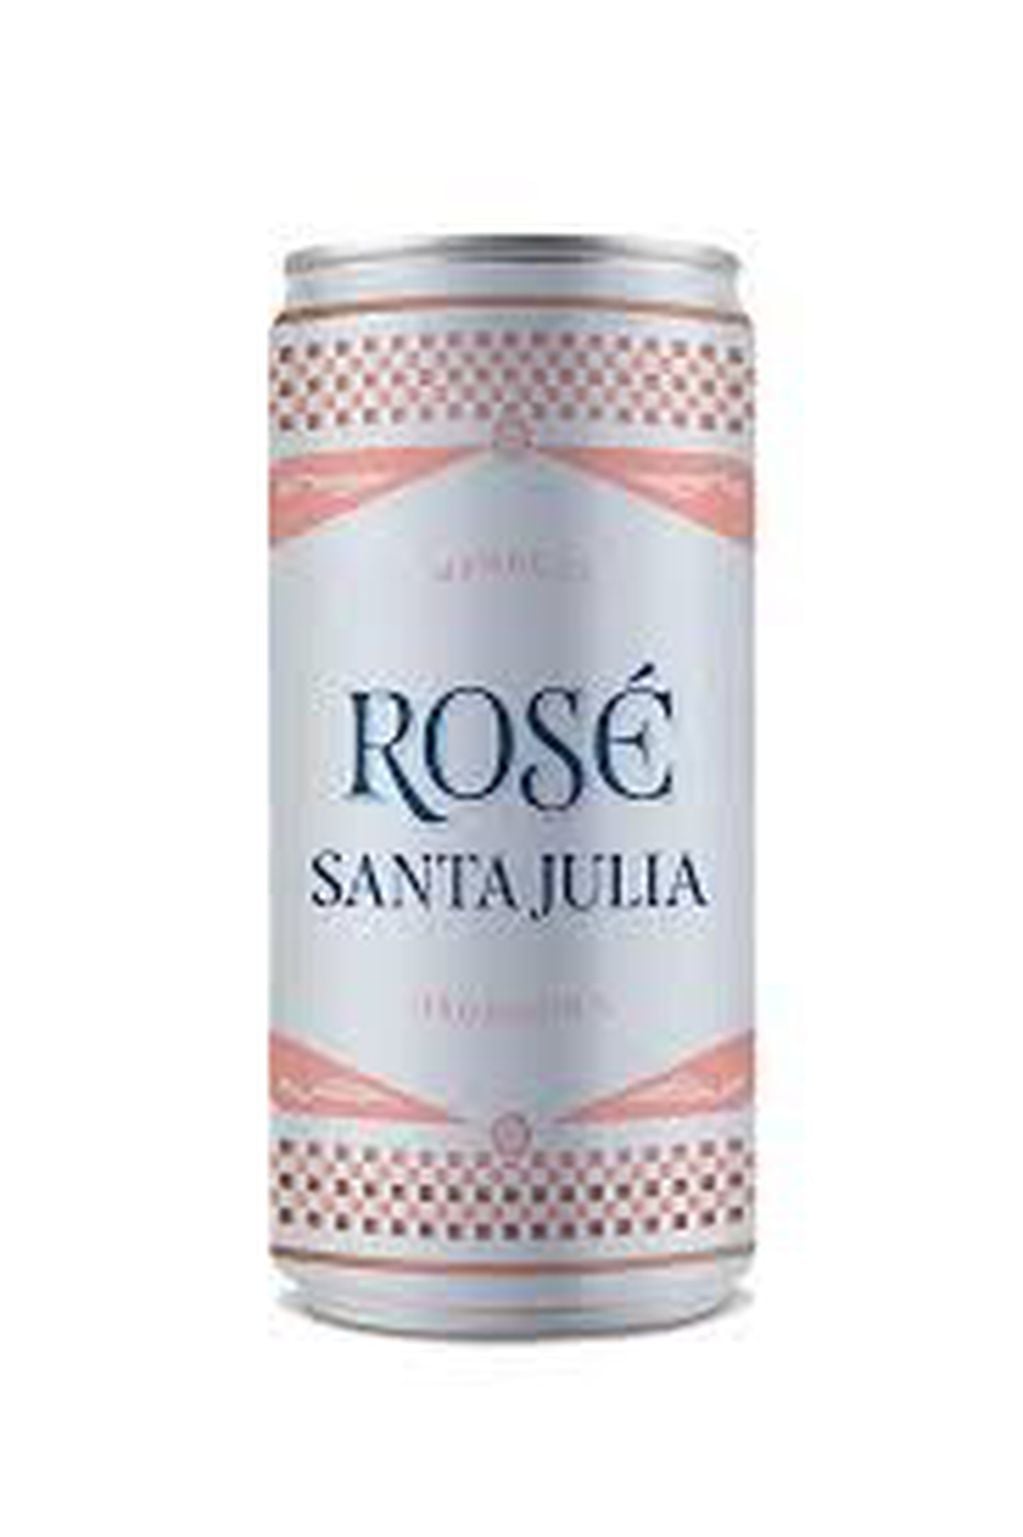 Santa Julia Rosé.